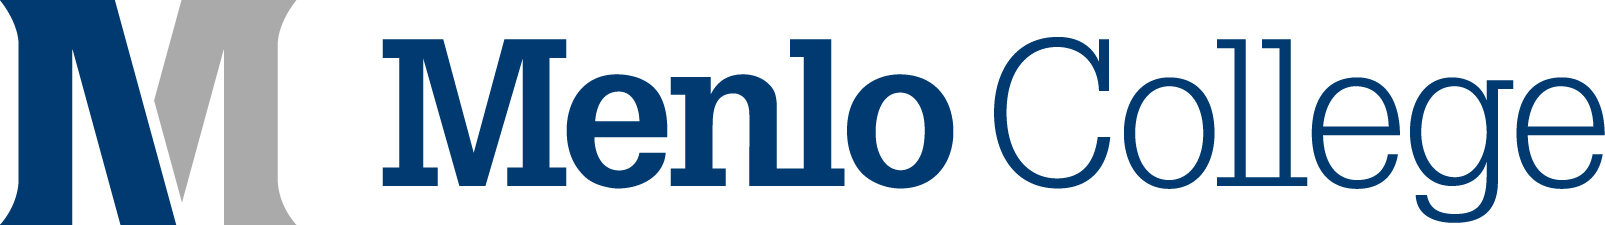 menlo-college-logo-horizontal-lockup-full-color.jpg